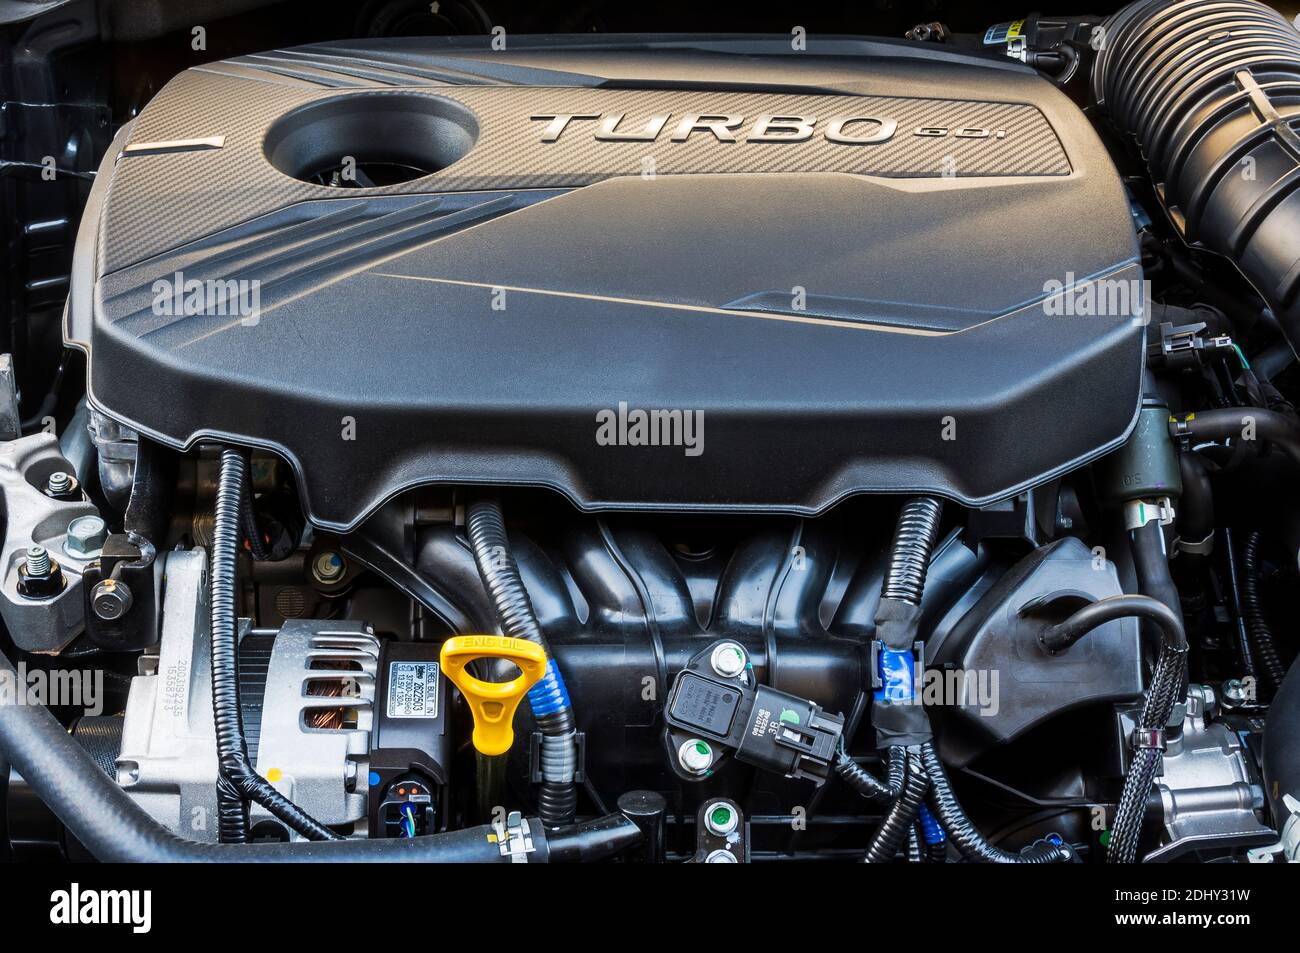 Vista frontale del motore Turbo da 1.6 litri e 201 CV in un modello Forte GT da 2021 Kia. Può essere simile al motore Hyundai Turbo della stessa cilindrata. Foto Stock